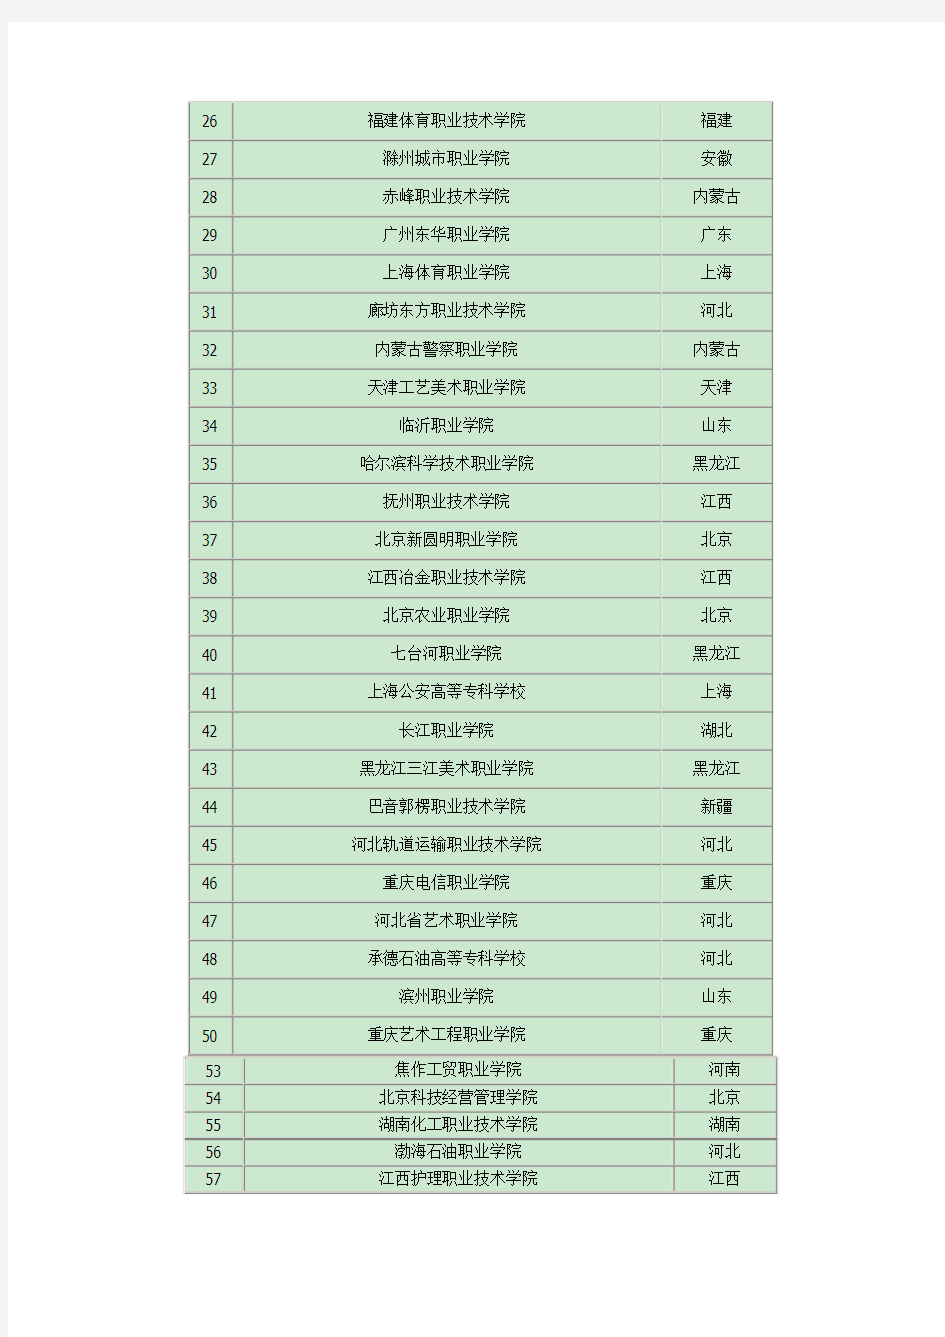 2015年中国专科院校排名(前100强)